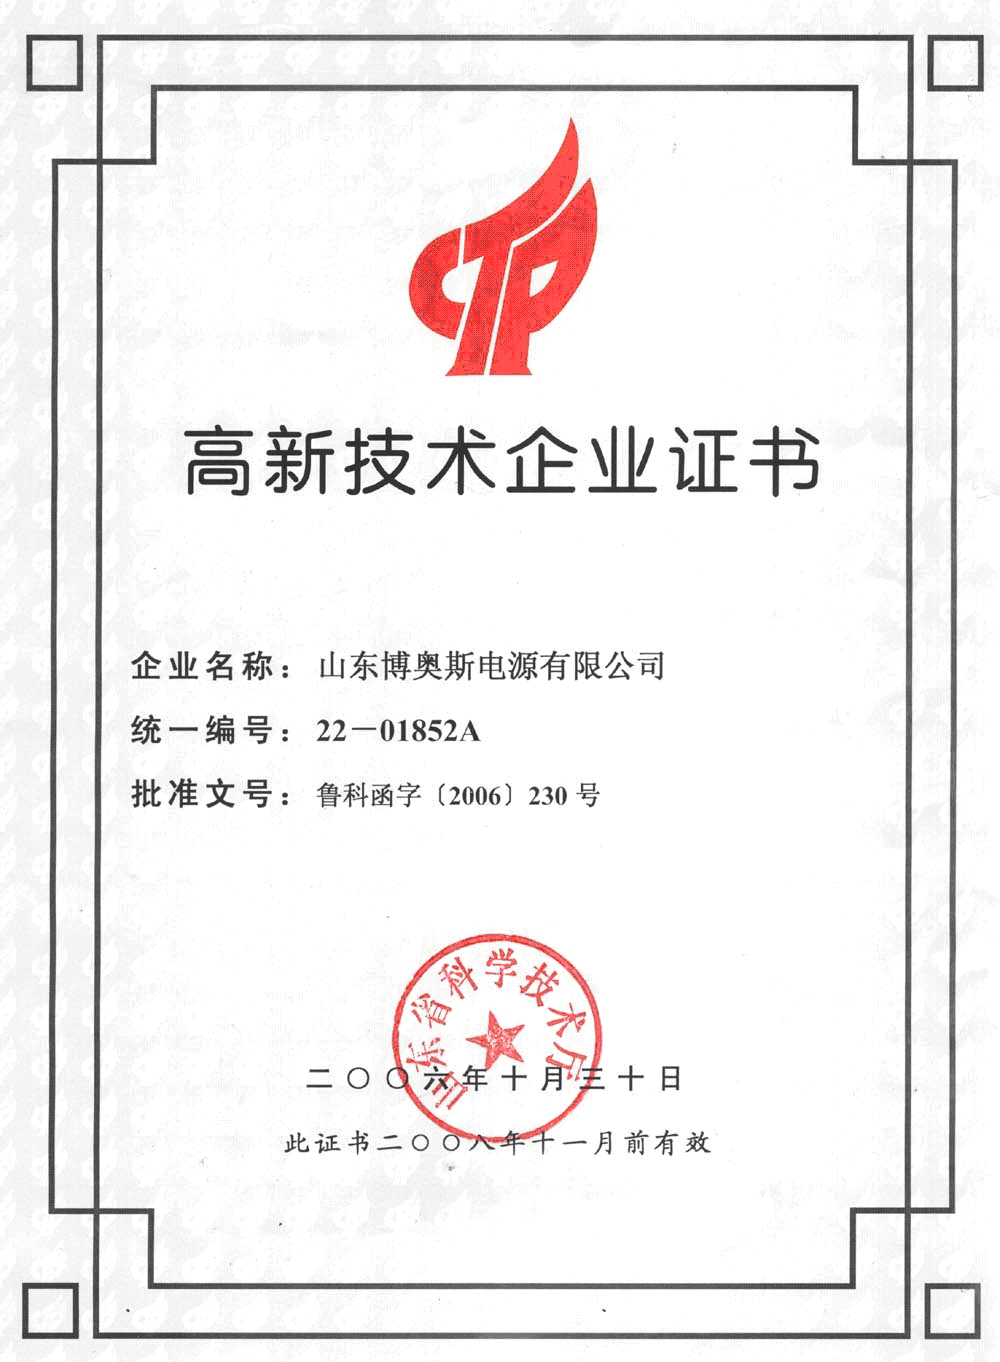 山东省高新技术企业证书